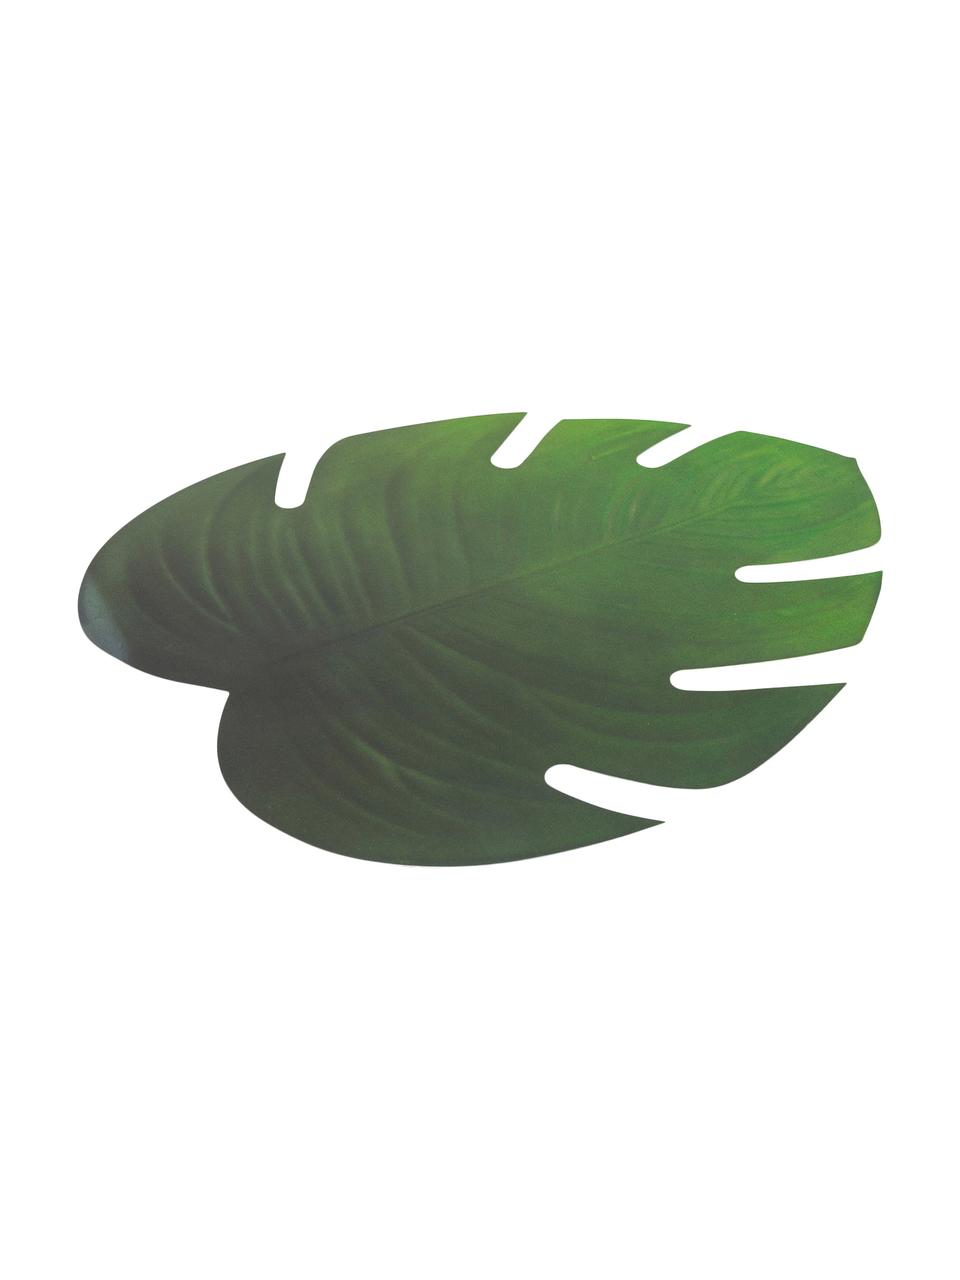 Podkładka z tworzywa sztucznego Jungle, 6 szt., Tworzywo sztuczne (PCV), Zielony, S 37 x D 47 cm